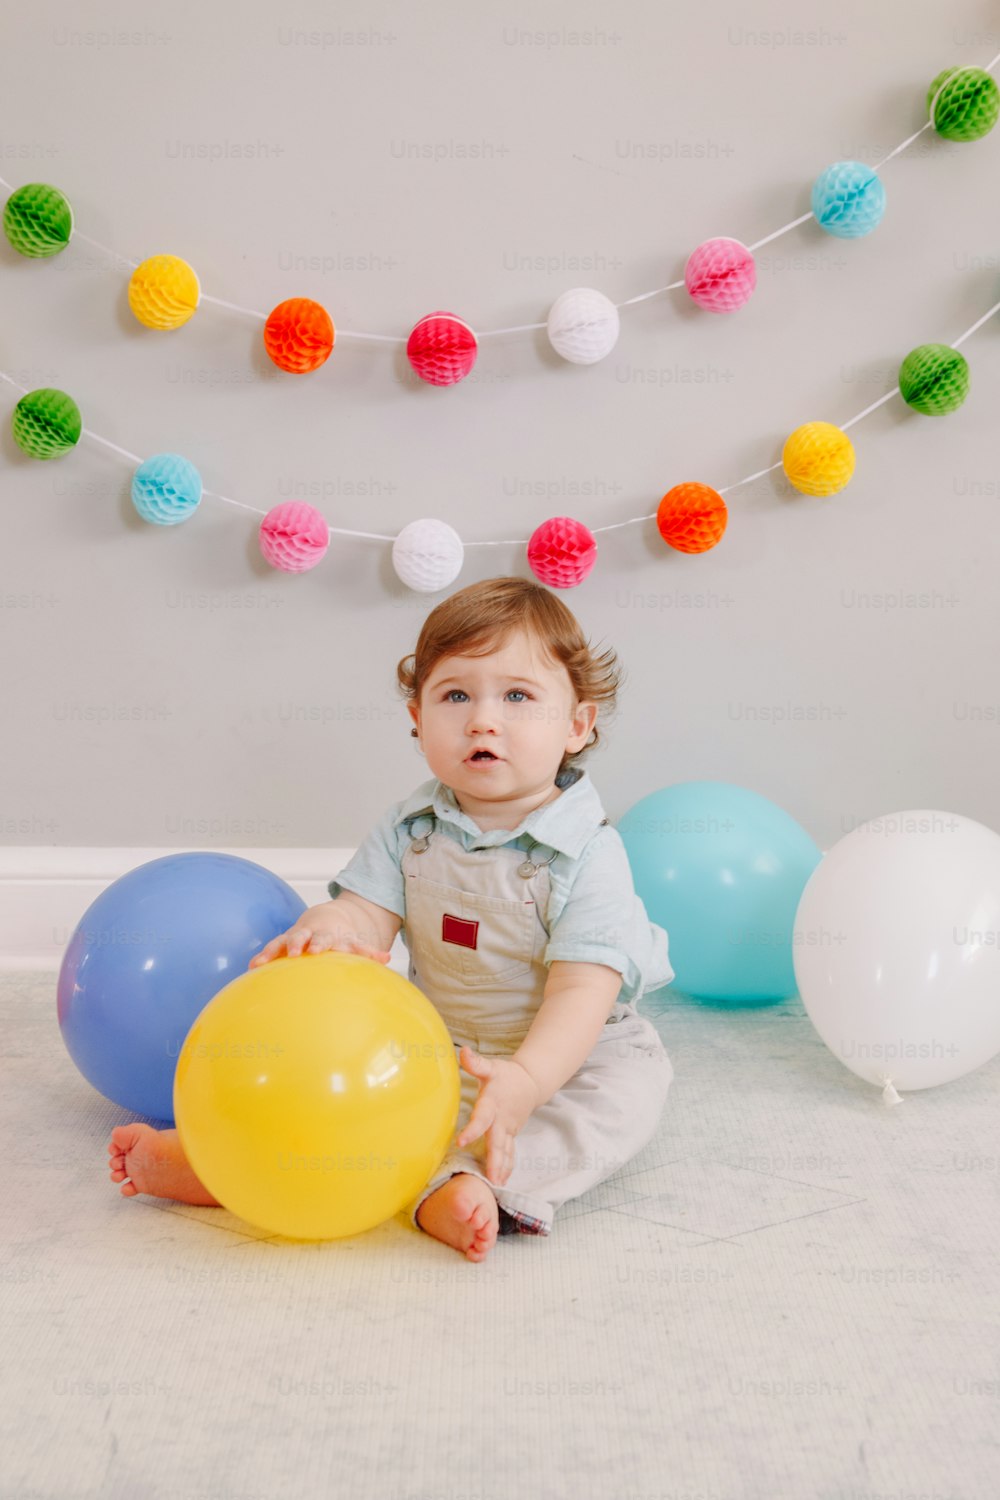 彼の1歳の誕生日を祝う面白い白人の男の子。色とりどりの風船を持って床に座っている子供の幼児。自宅でのイベントやパーティーのお祝い。お誕生日おめでとうライフスタイルのコンセプト。